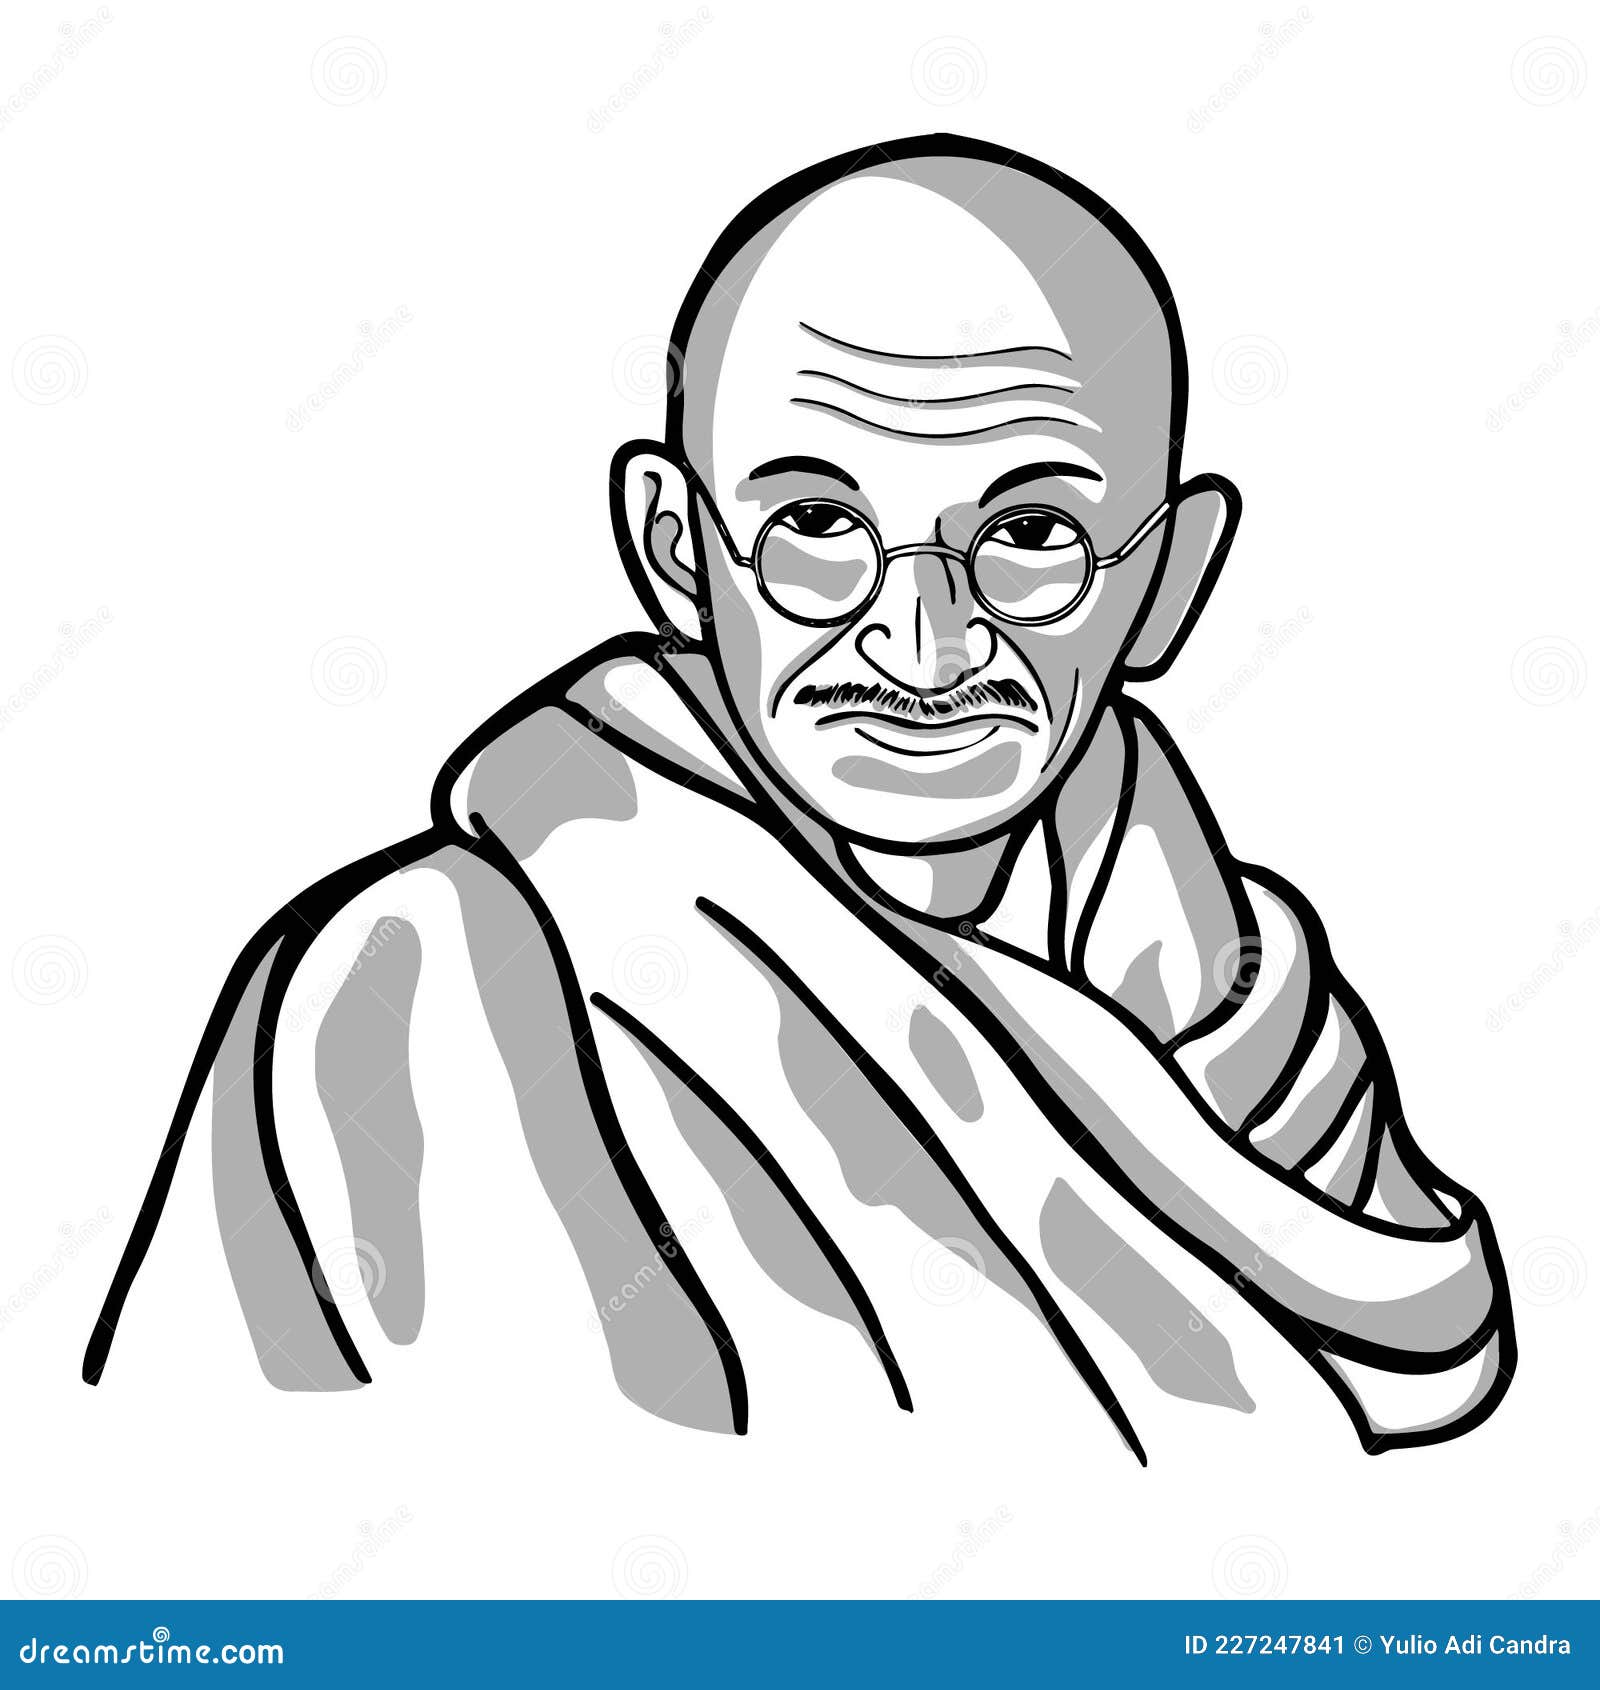 Gandhi Drawing by Ayan Ghoshal - Pixels